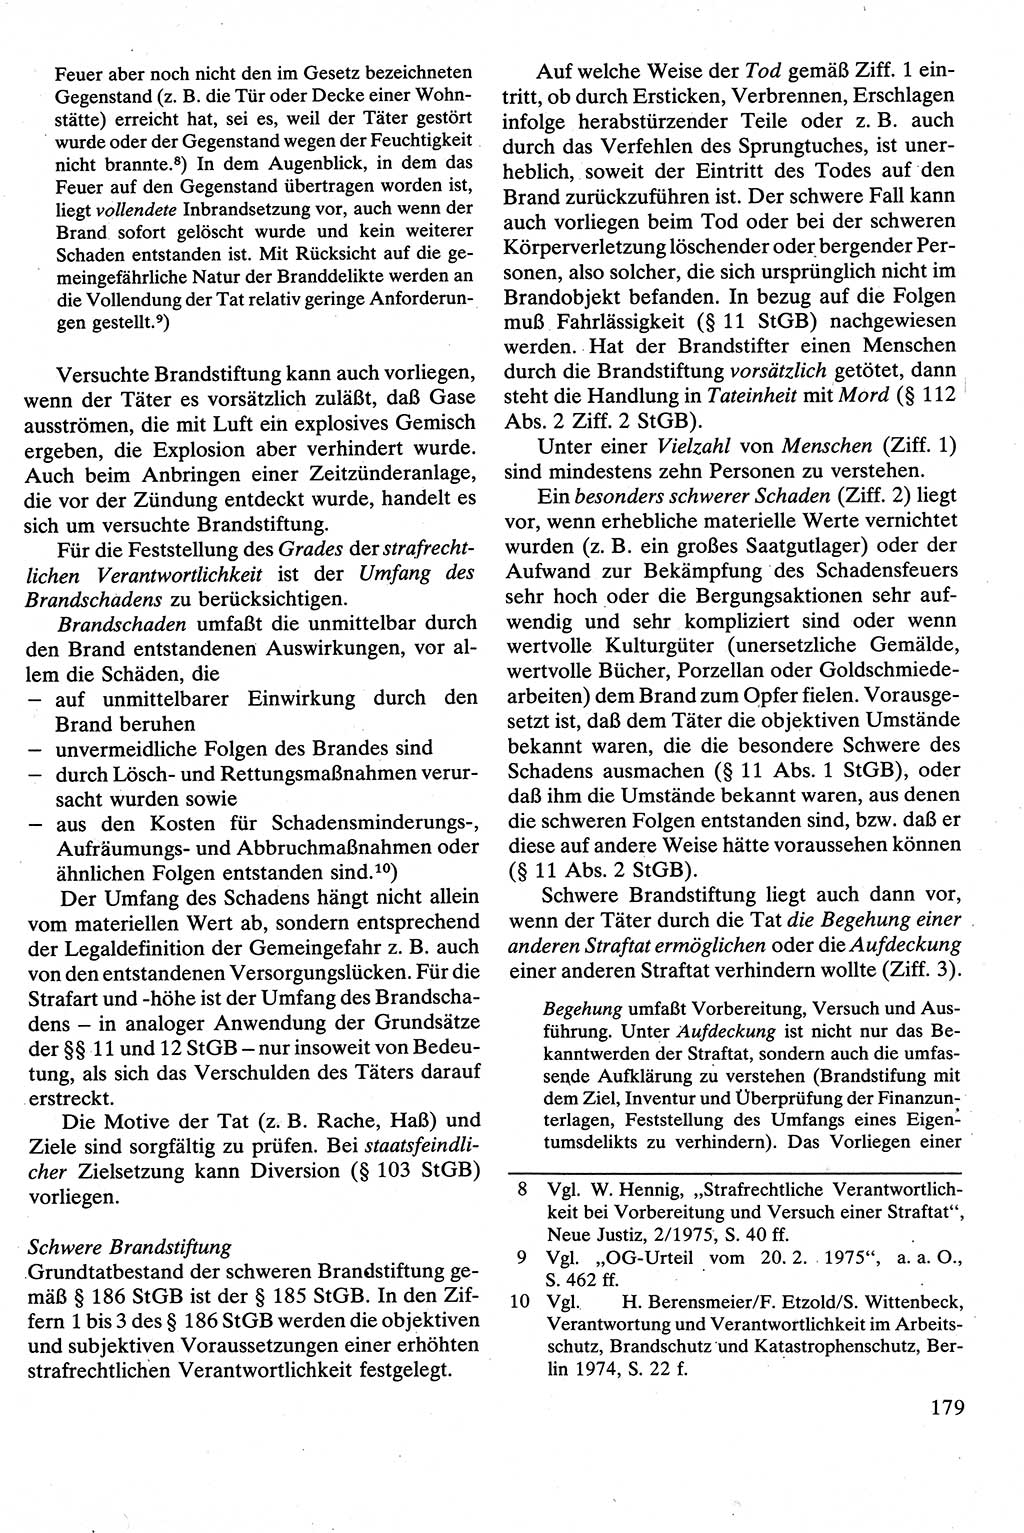 Strafrecht [Deutsche Demokratische Republik (DDR)], Besonderer Teil, Lehrbuch 1981, Seite 179 (Strafr. DDR BT Lb. 1981, S. 179)